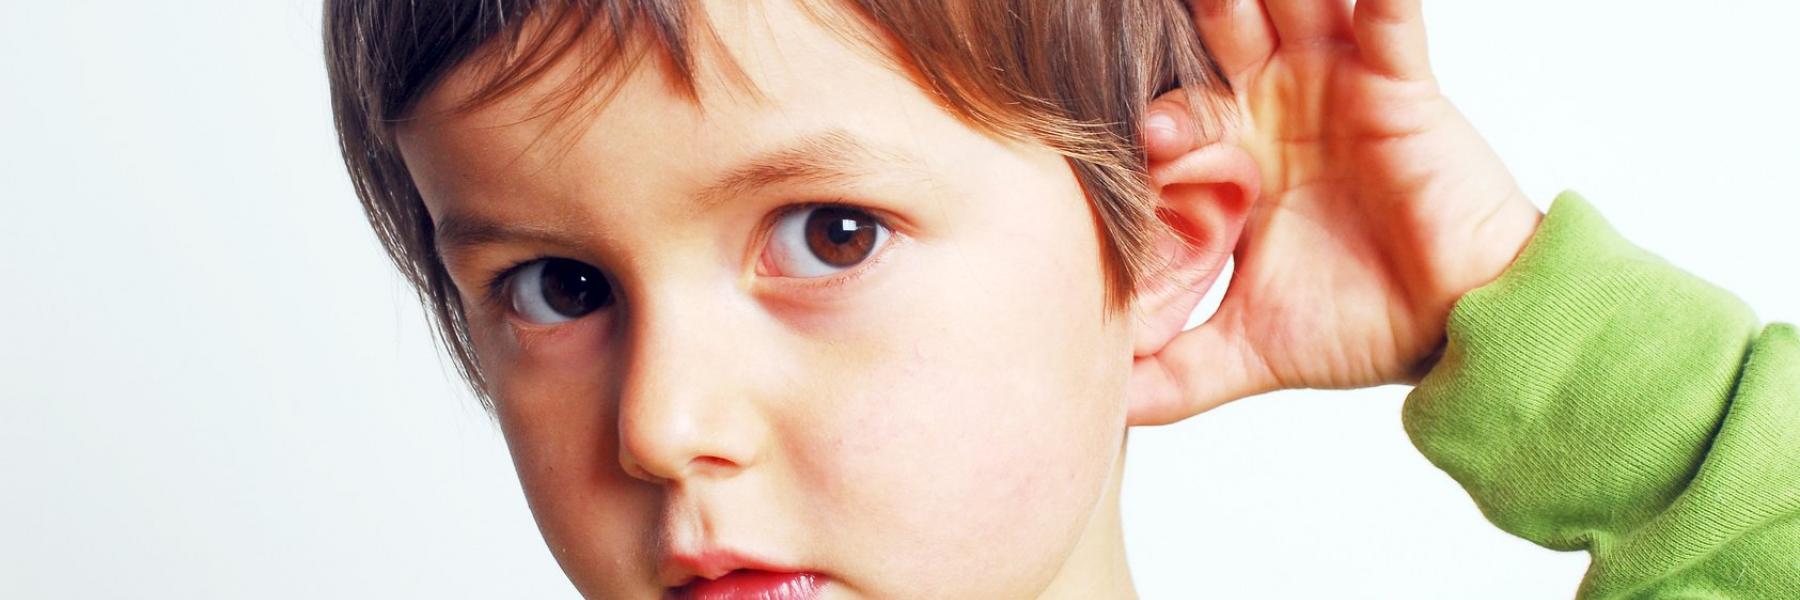 نصائح للتواصل مع الطّفل الأصمّ أو ضعيف السّمع